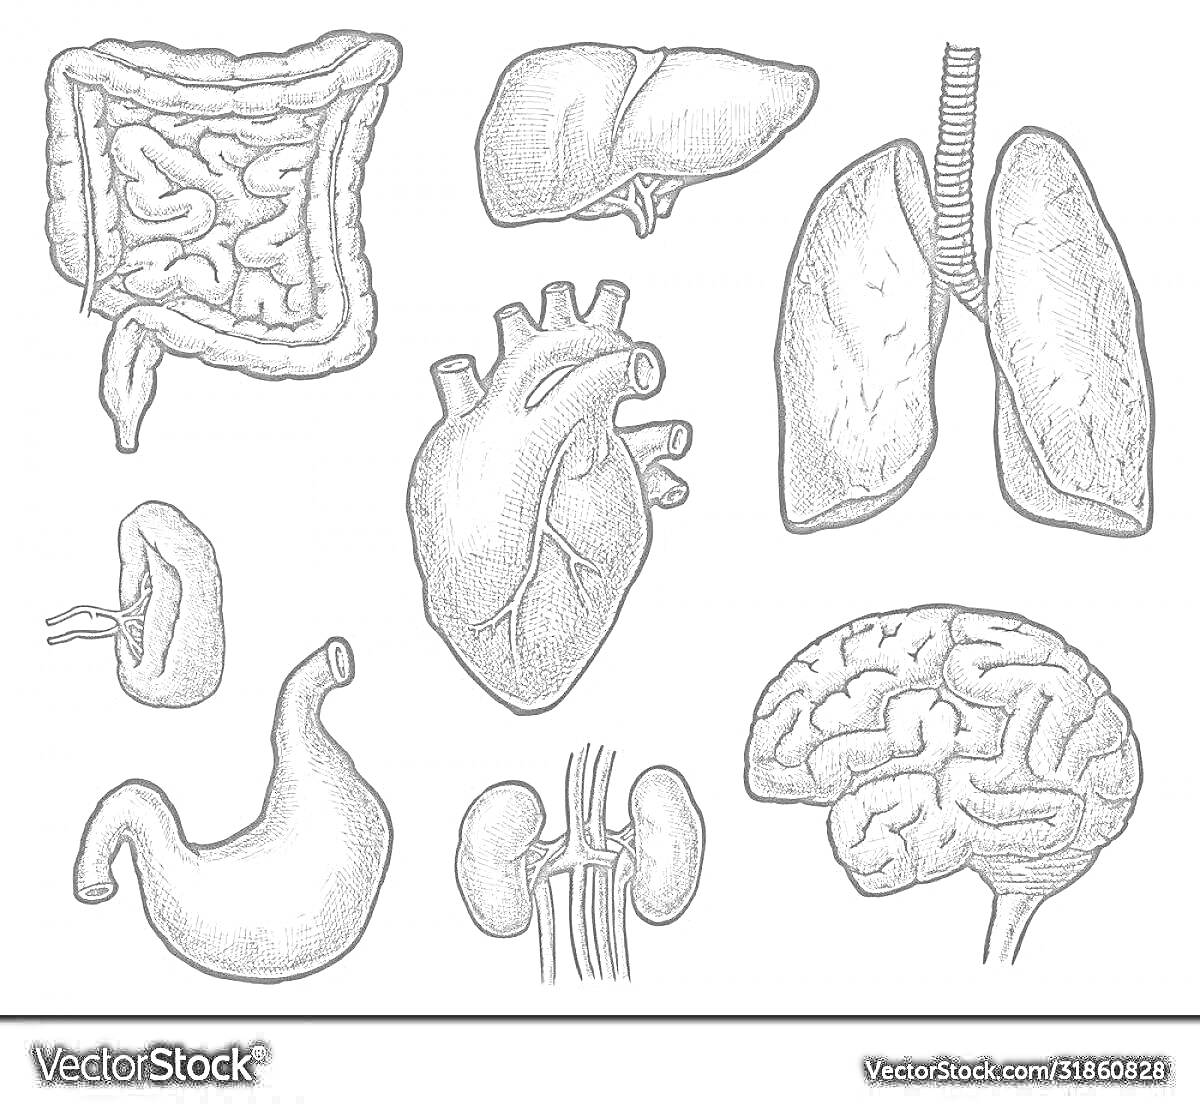 Внутренние органы человека — мозг, сердце, легкие, печень, желудок, кишечник, почки